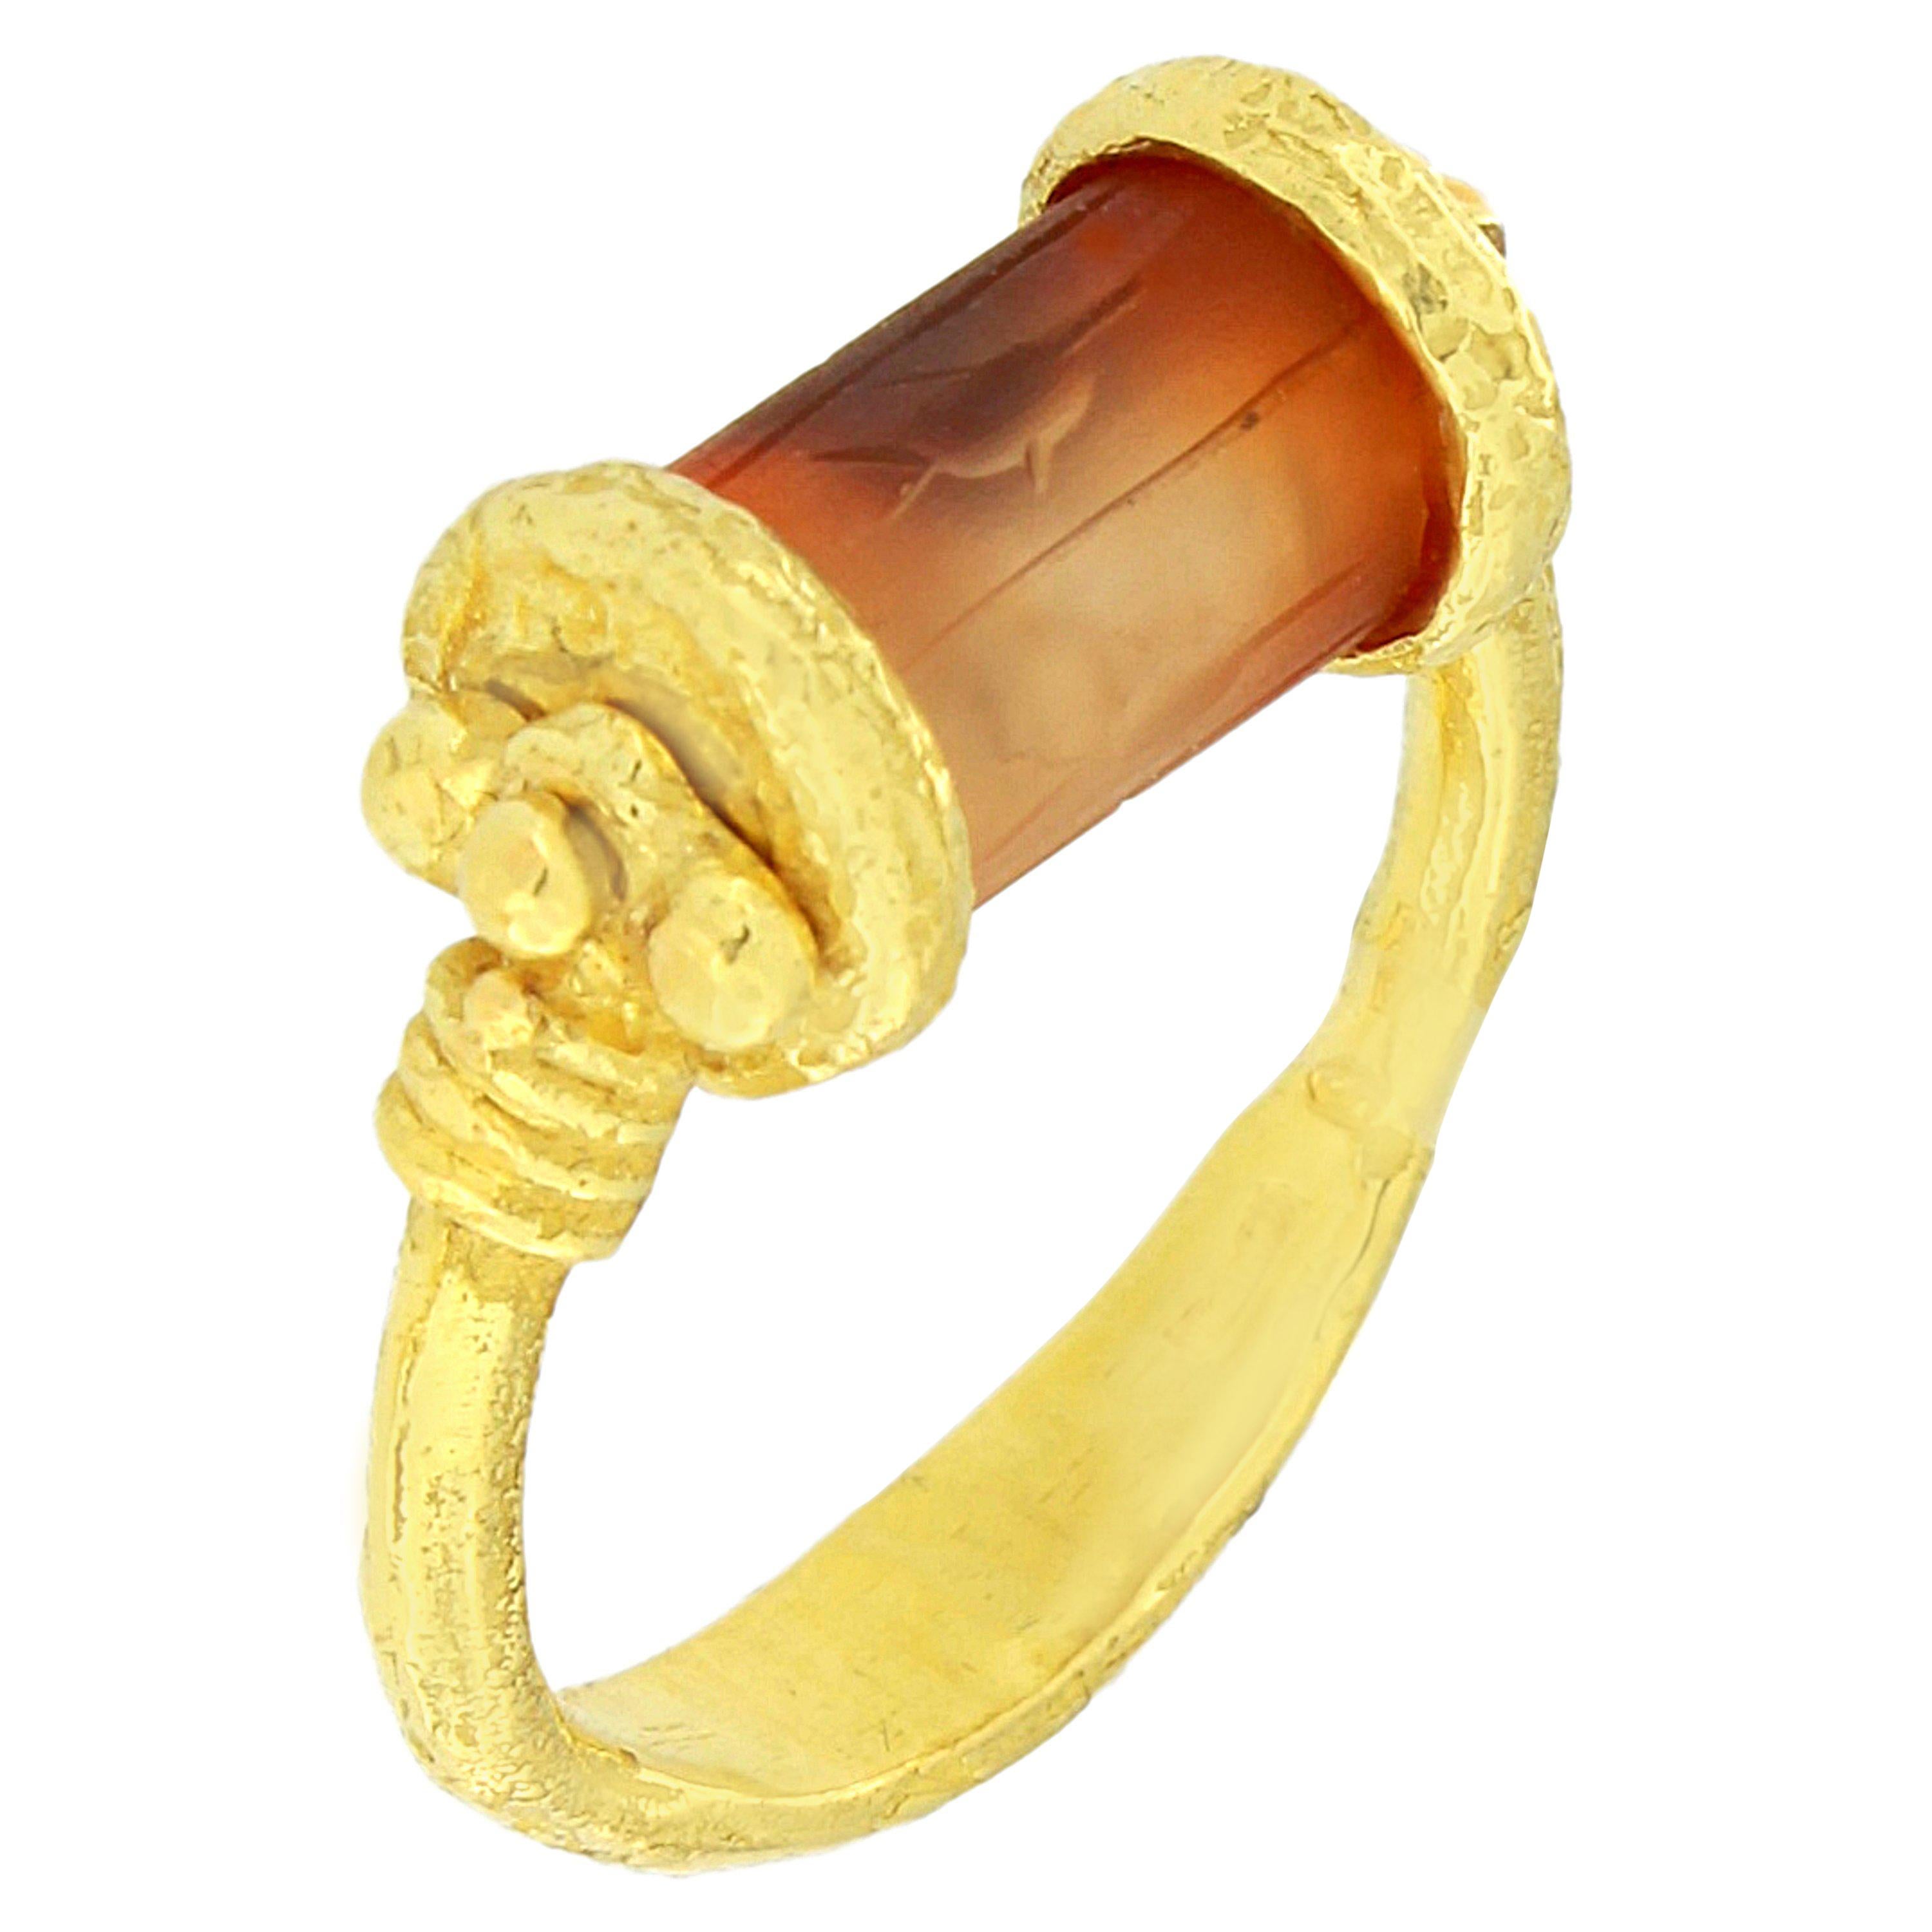 Sacchi gravierter Karneol Zylinder Siegelring aus 18 Karat Satin Gelbgold